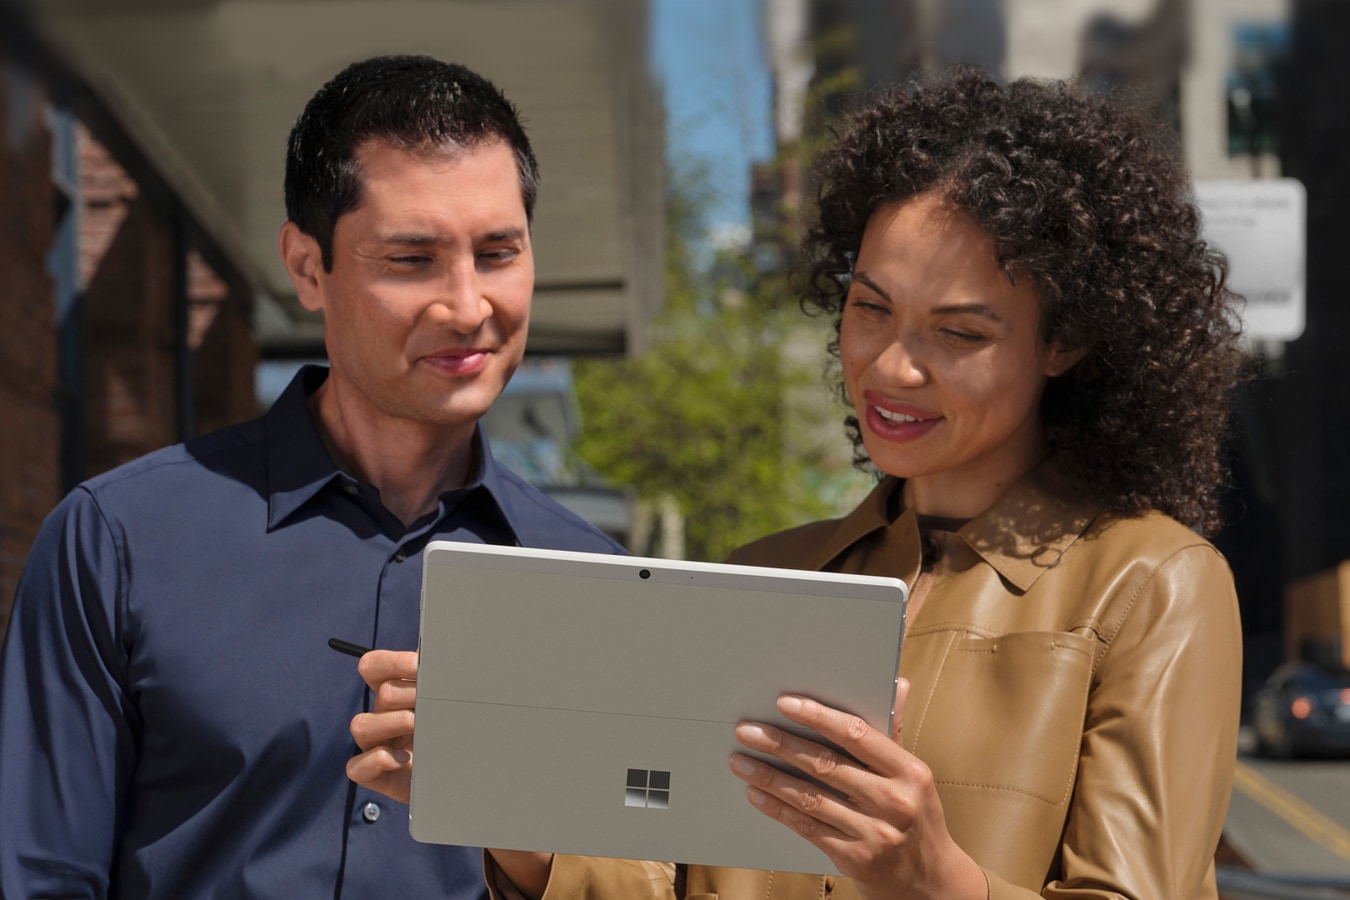 Kaksi ihmistä seisomassa suurkaupungin jalkakäytävällä katselleen tablettitilassa olevan Surface Pro X -laitteensa näyttöä